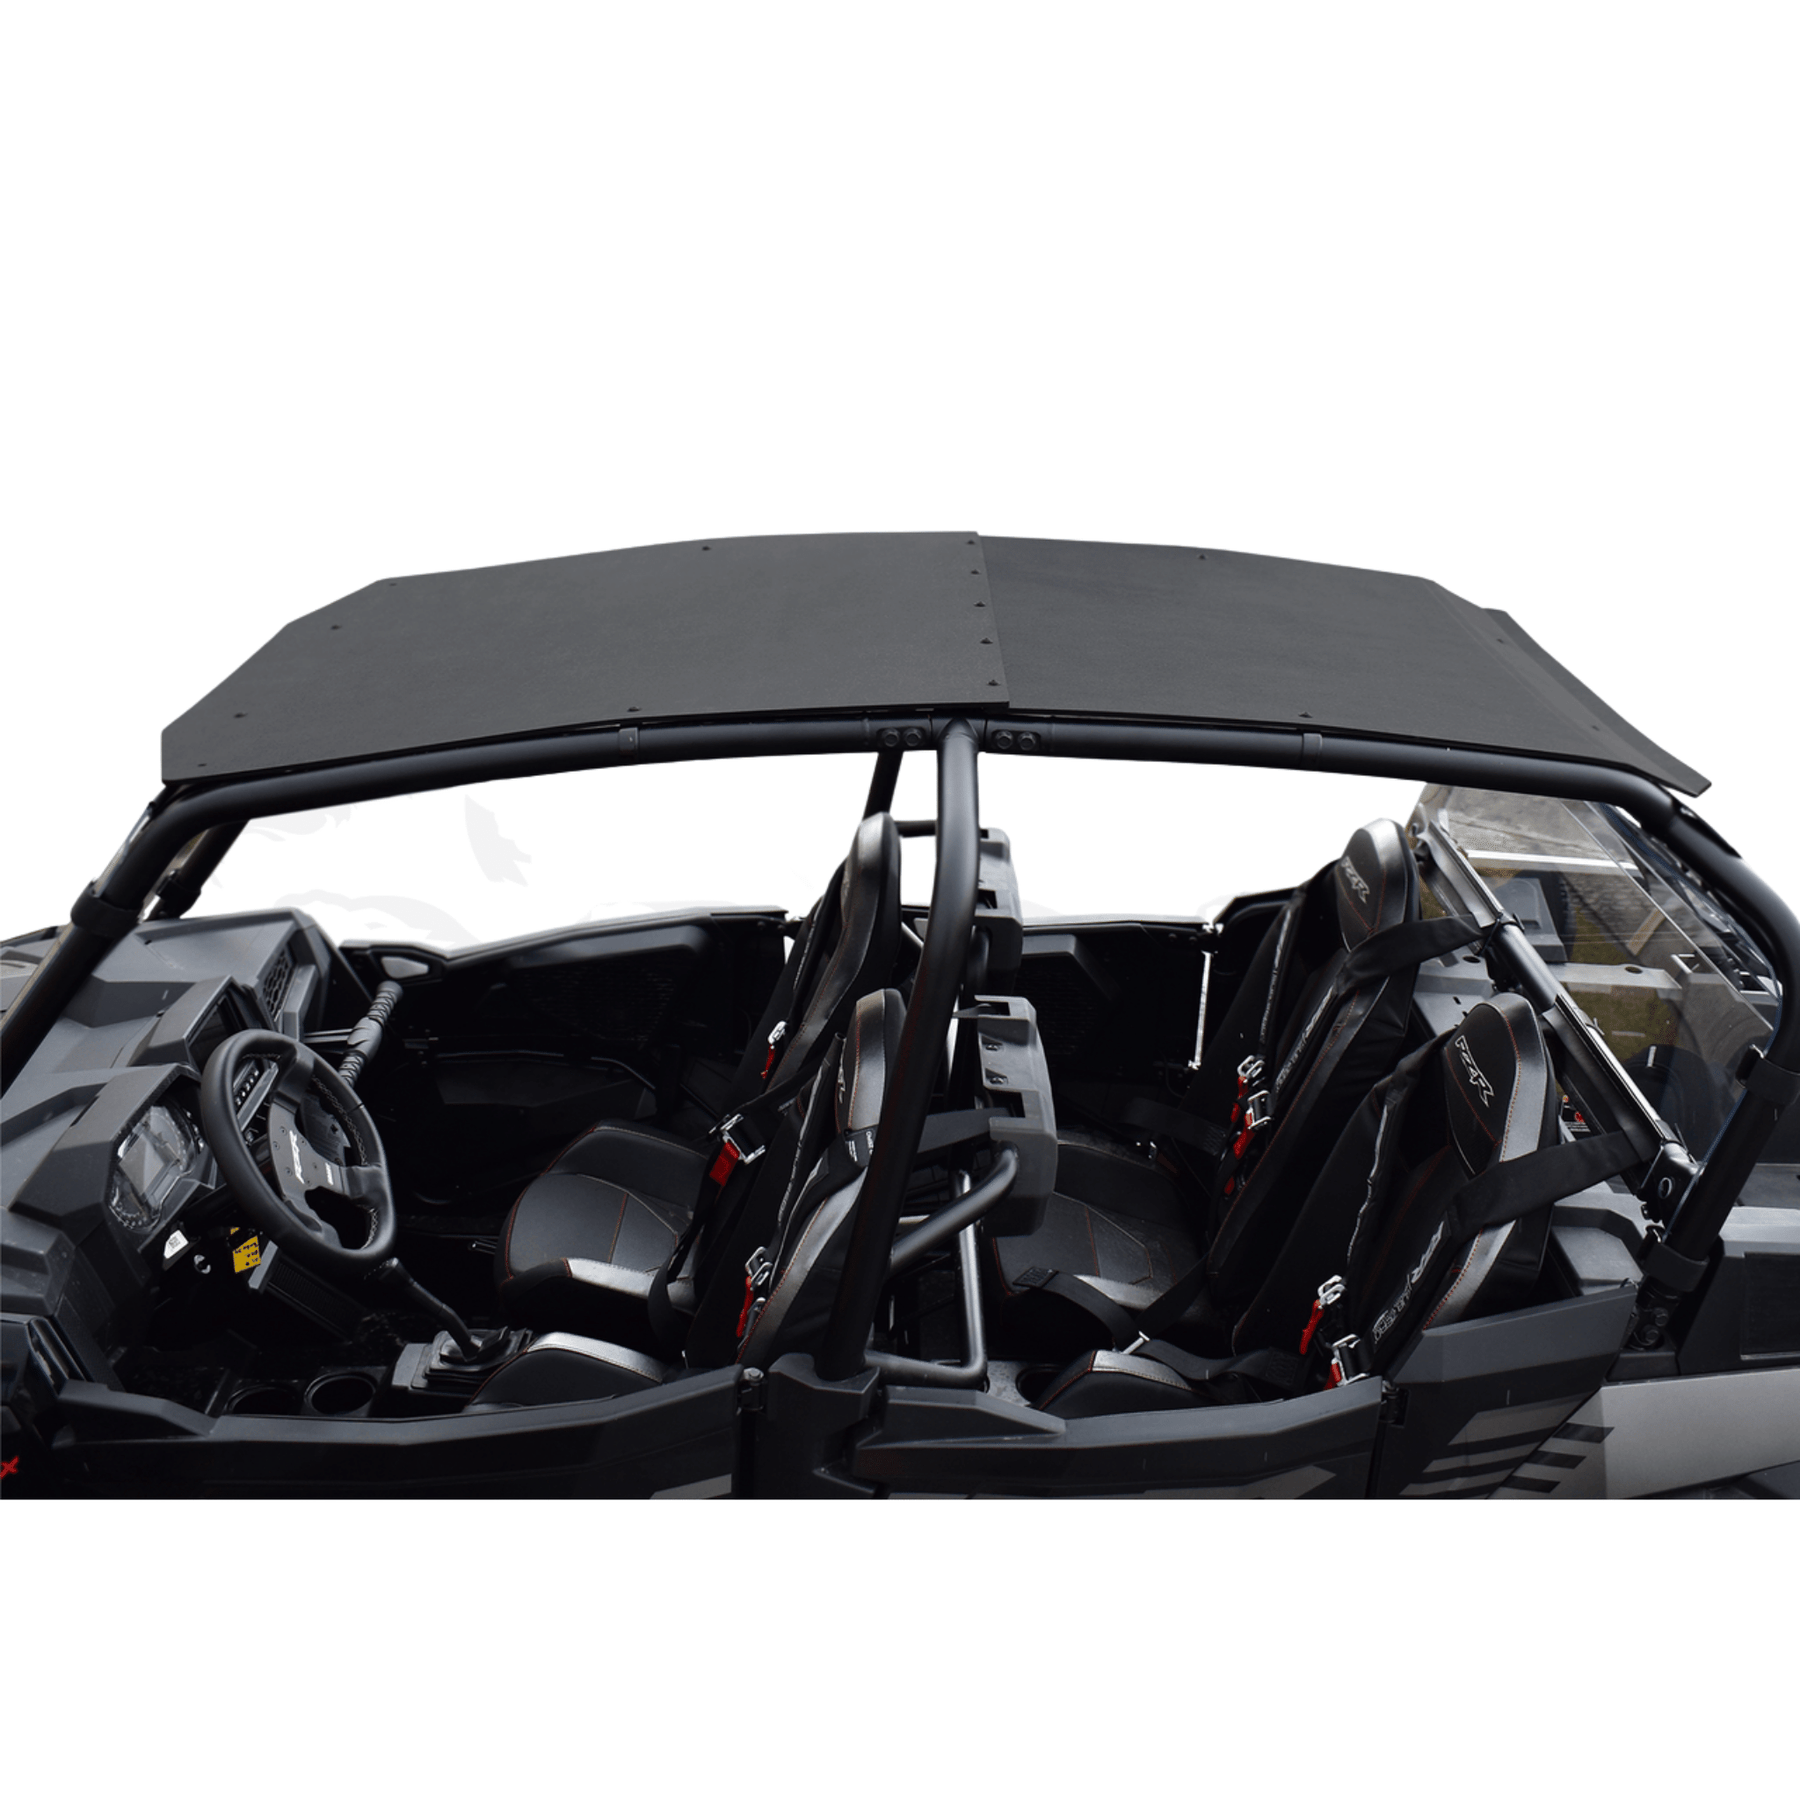 Polaris RZR Turbo S 4-Seat Plastic Roof (2019+)